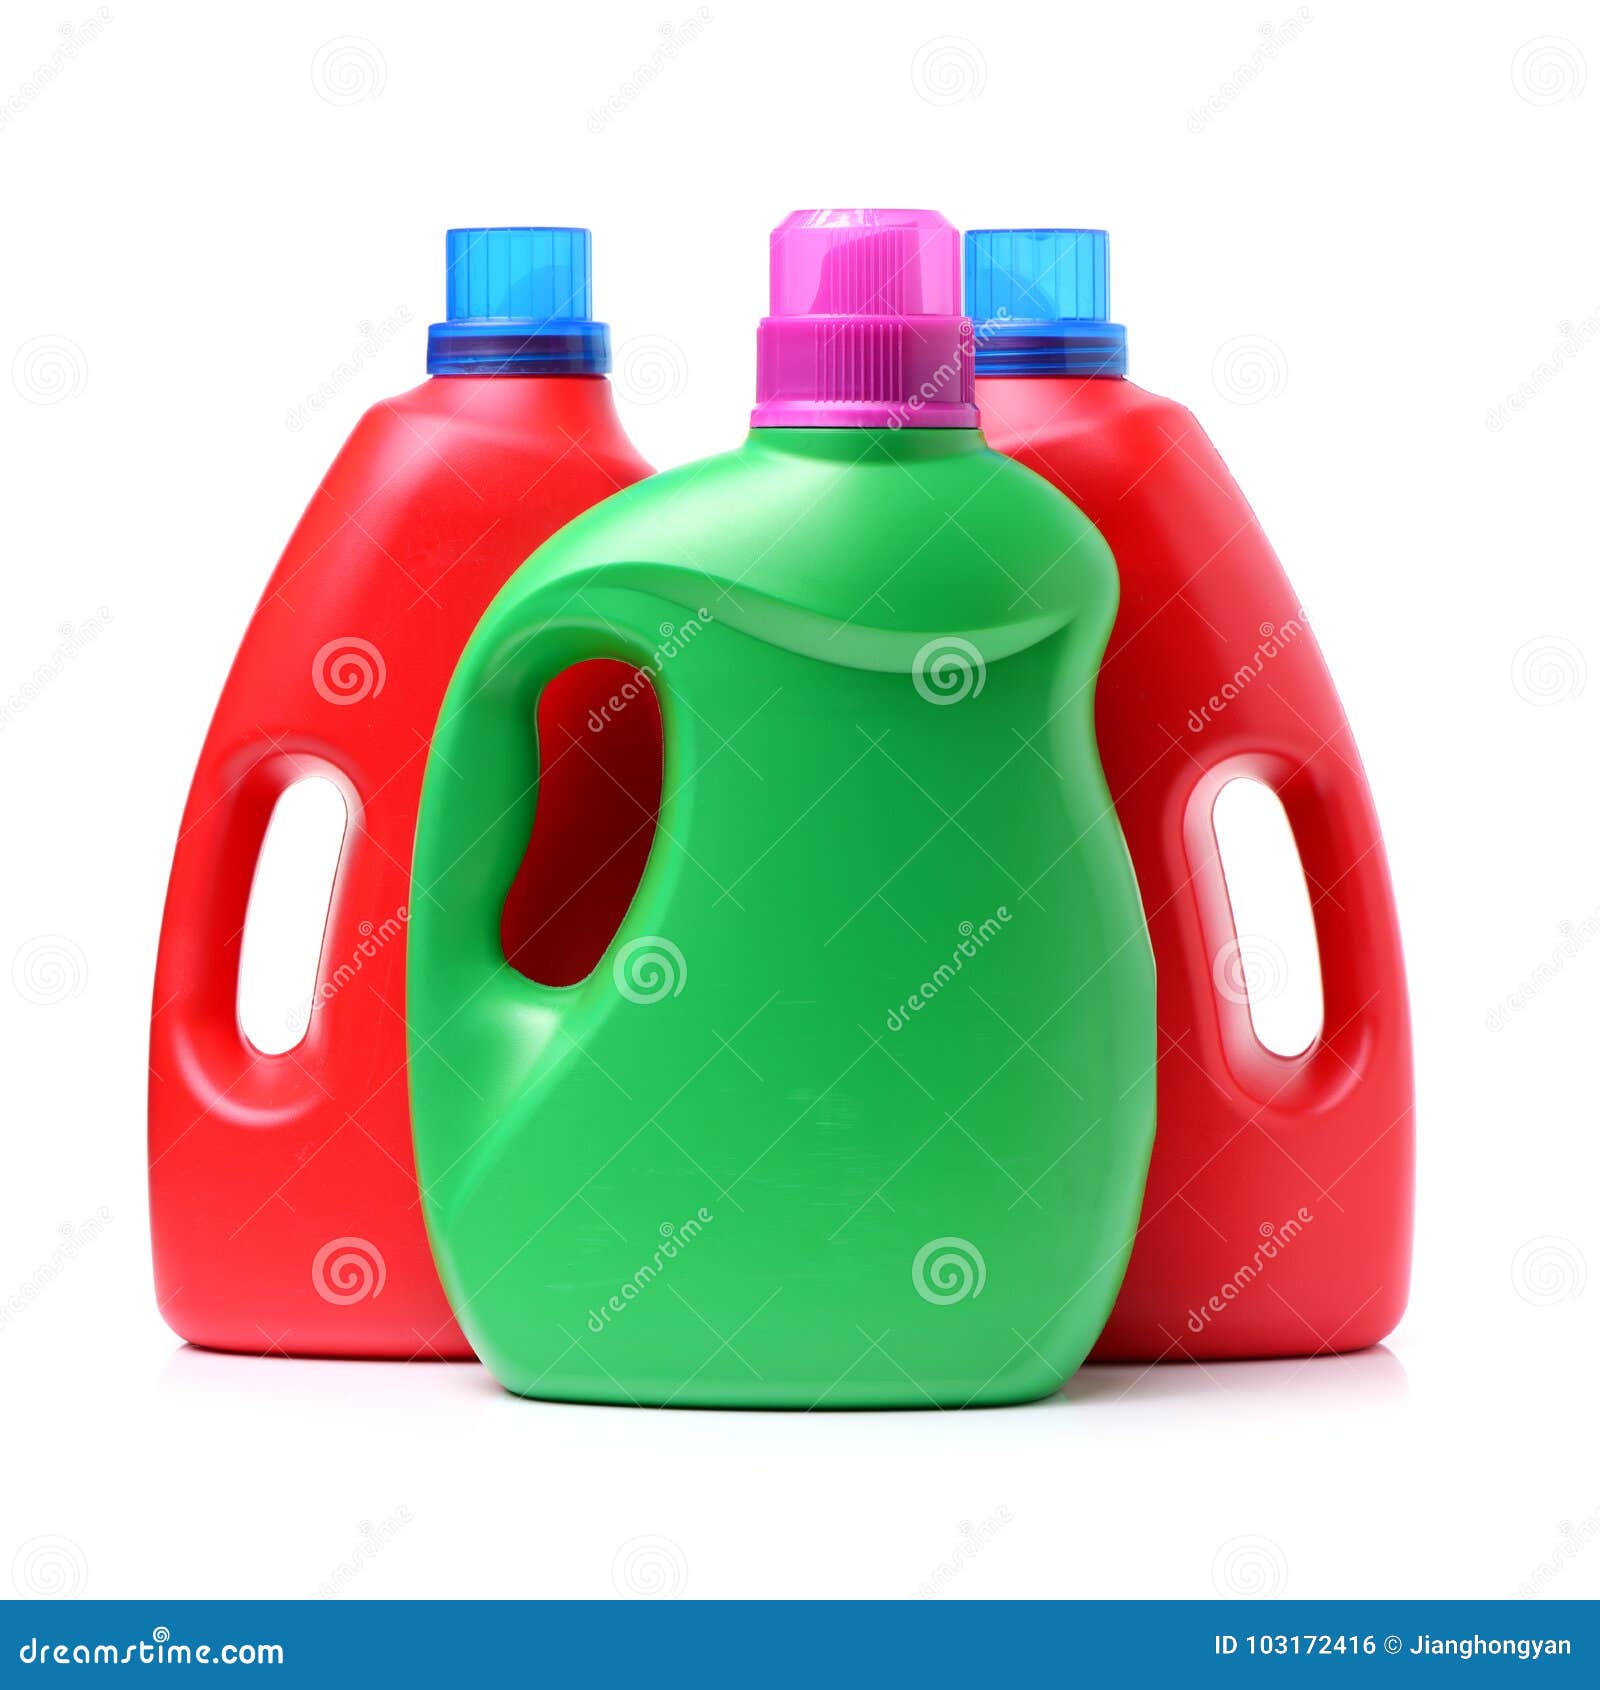 laundry detergent bottle